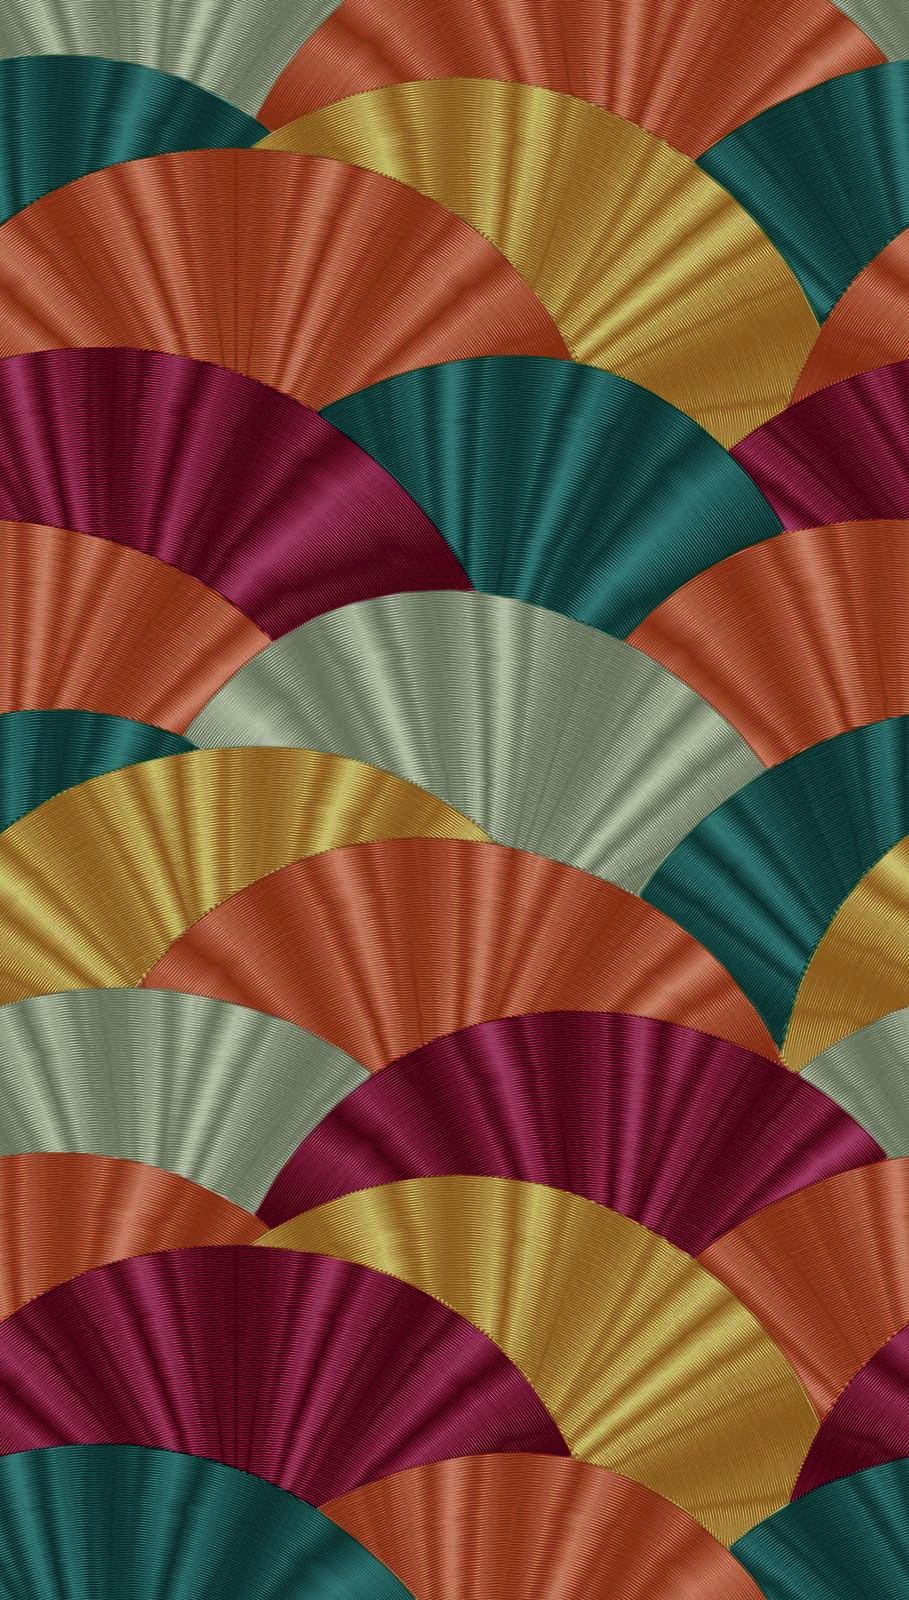             Papel pintado tejido-no tejido de colores con motivo de abanico grande - multicolor, rojo, turquesa
        